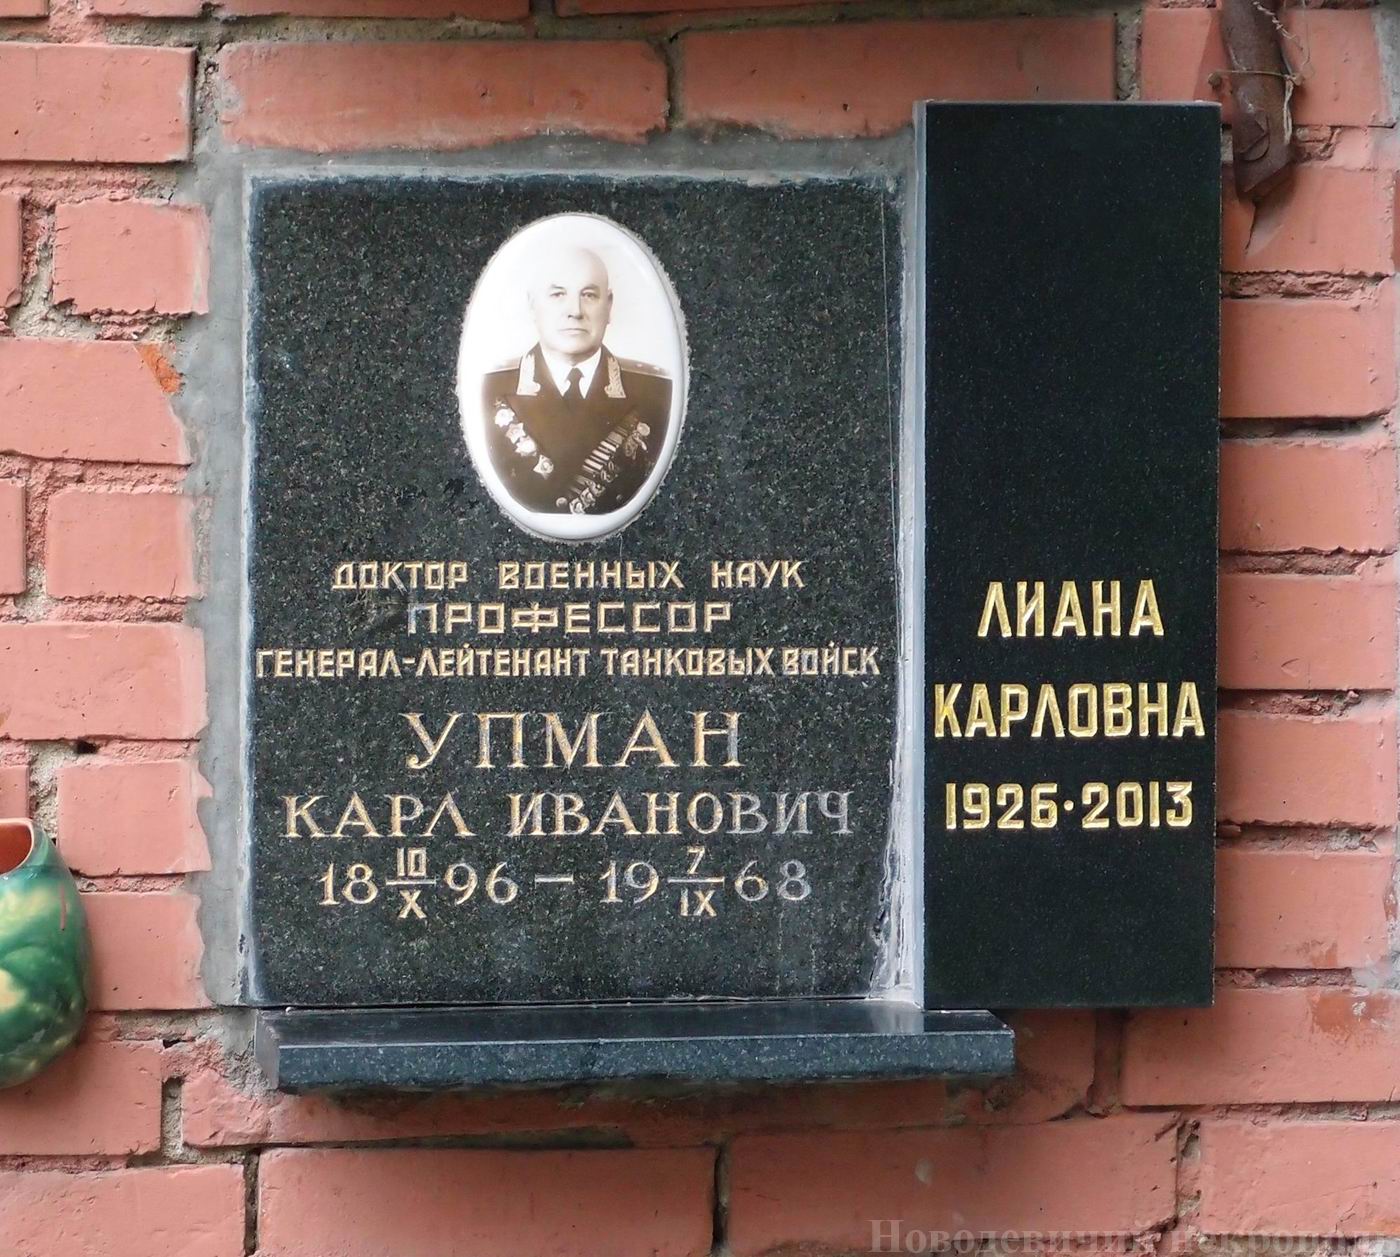 Плита на нише Упмана К.И. (1896-1968), на Новодевичьем кладбище (колумбарий [129]-16-3). Нажмите левую кнопку мыши, чтобы увидеть вариант до 2013.